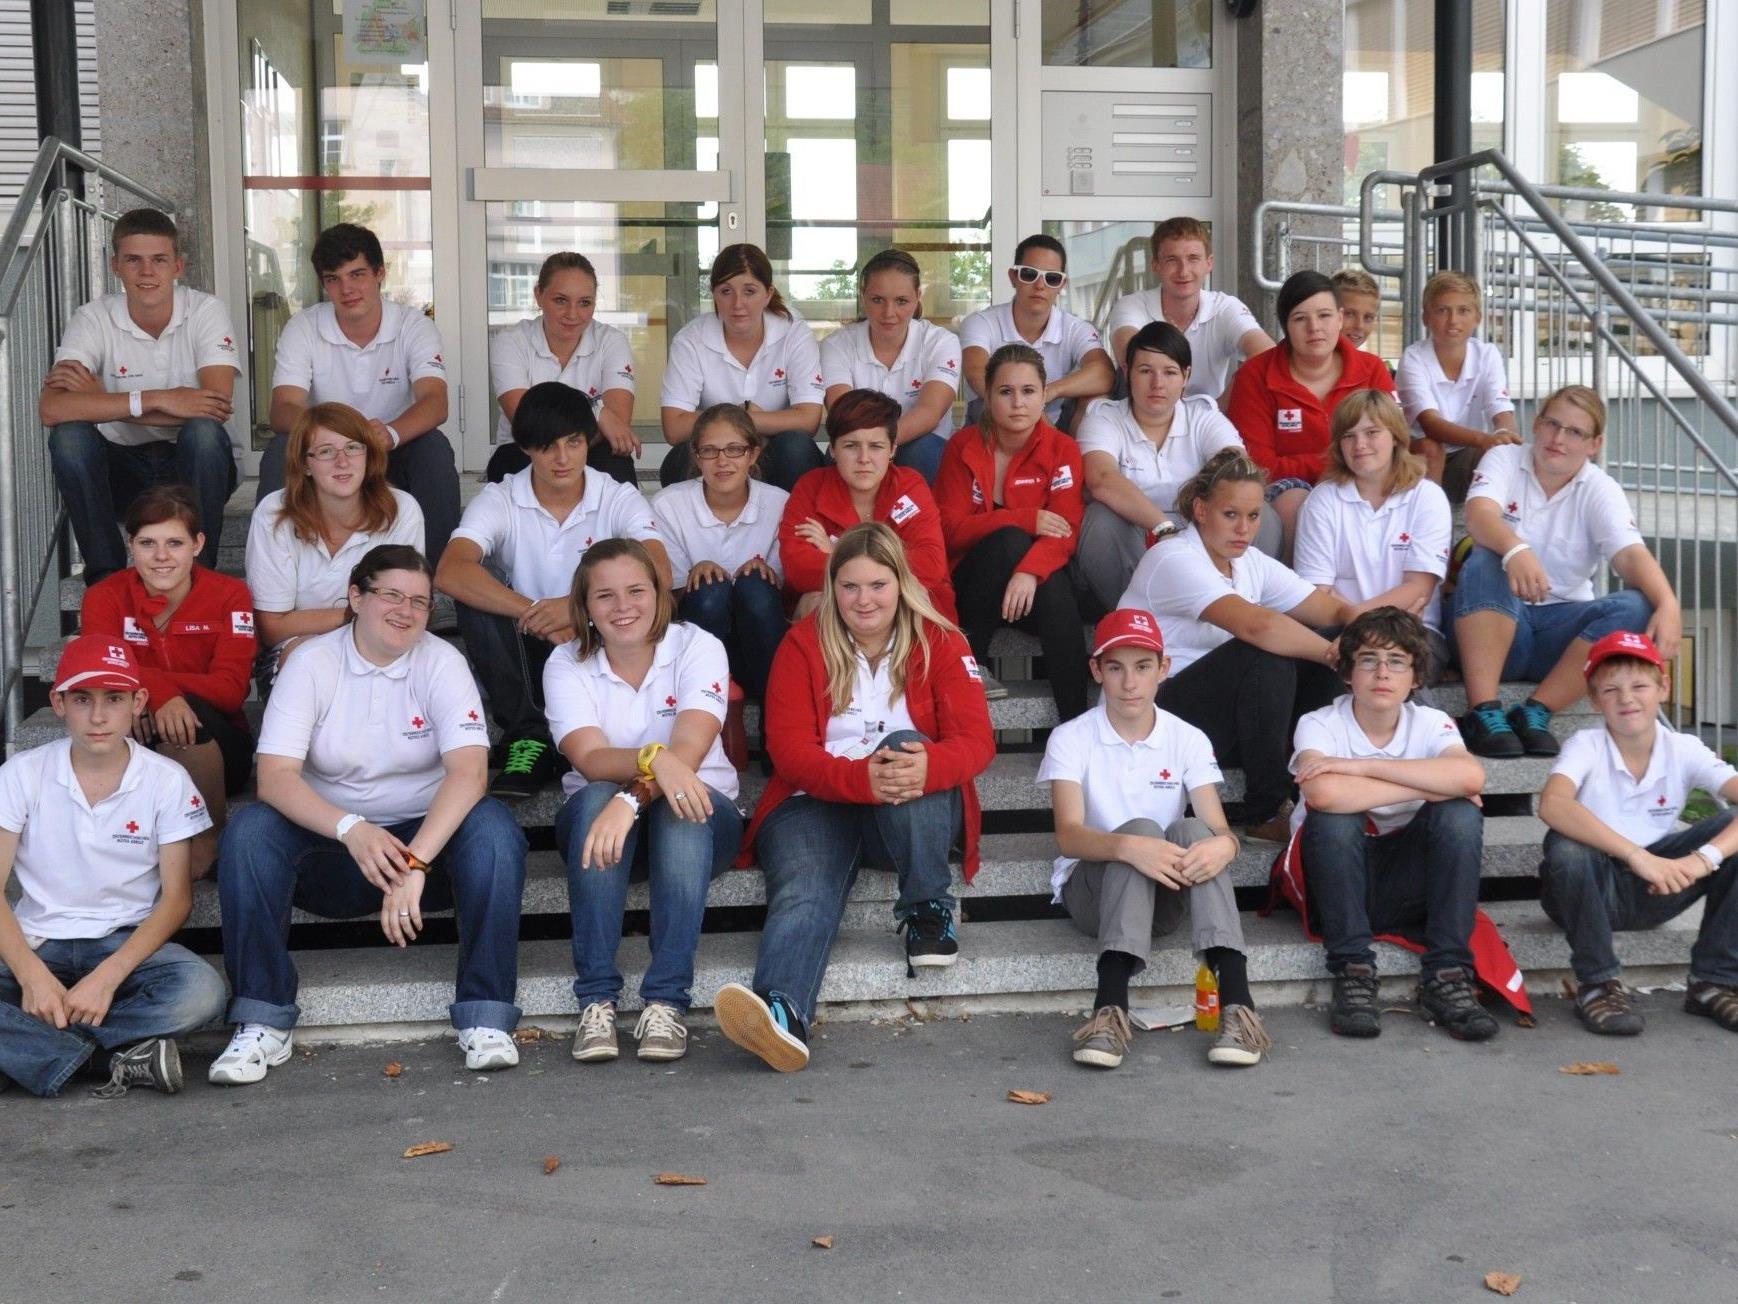 Kinder, Jugendliche und Jugendreferenten aus dem ganzen Land trafen sich beim Rot-Kreuz-Jugendcamp 2012 in Lochau am Bodensee.